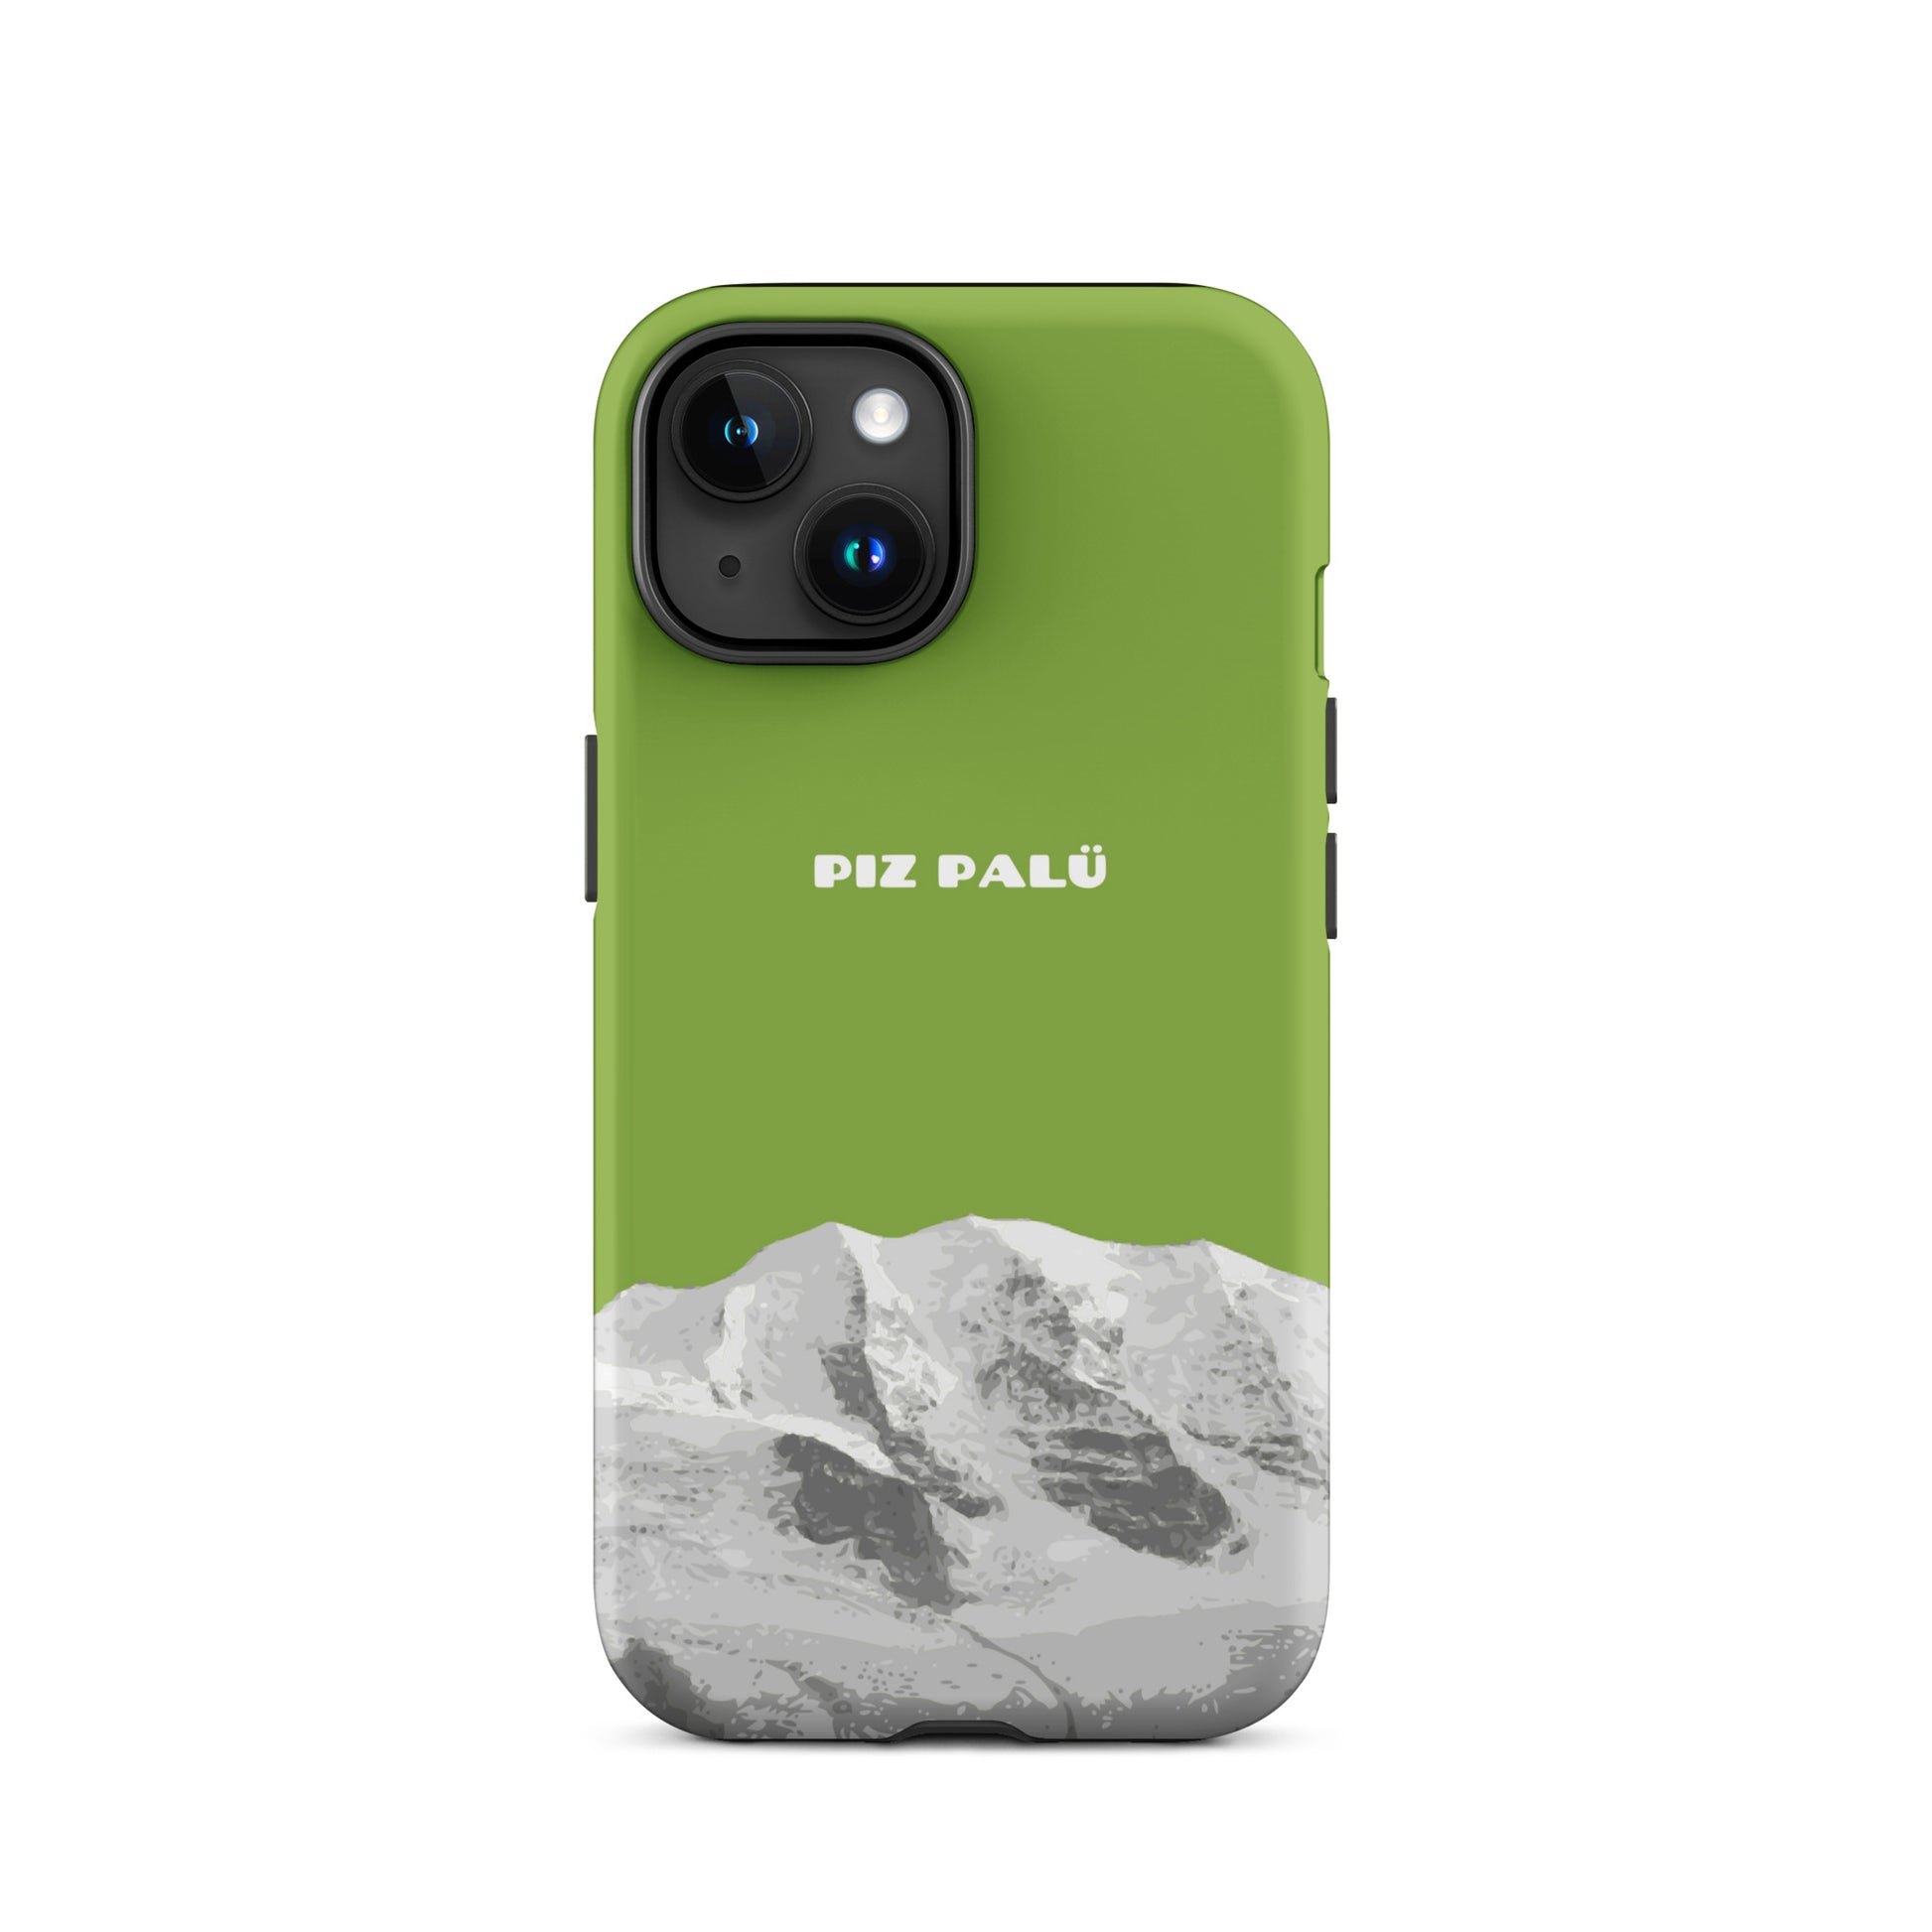 Hülle für das iPhone 15 von Apple in der Farbe Gelbgrün, dass den Piz Palü in Graubünden zeigt. 